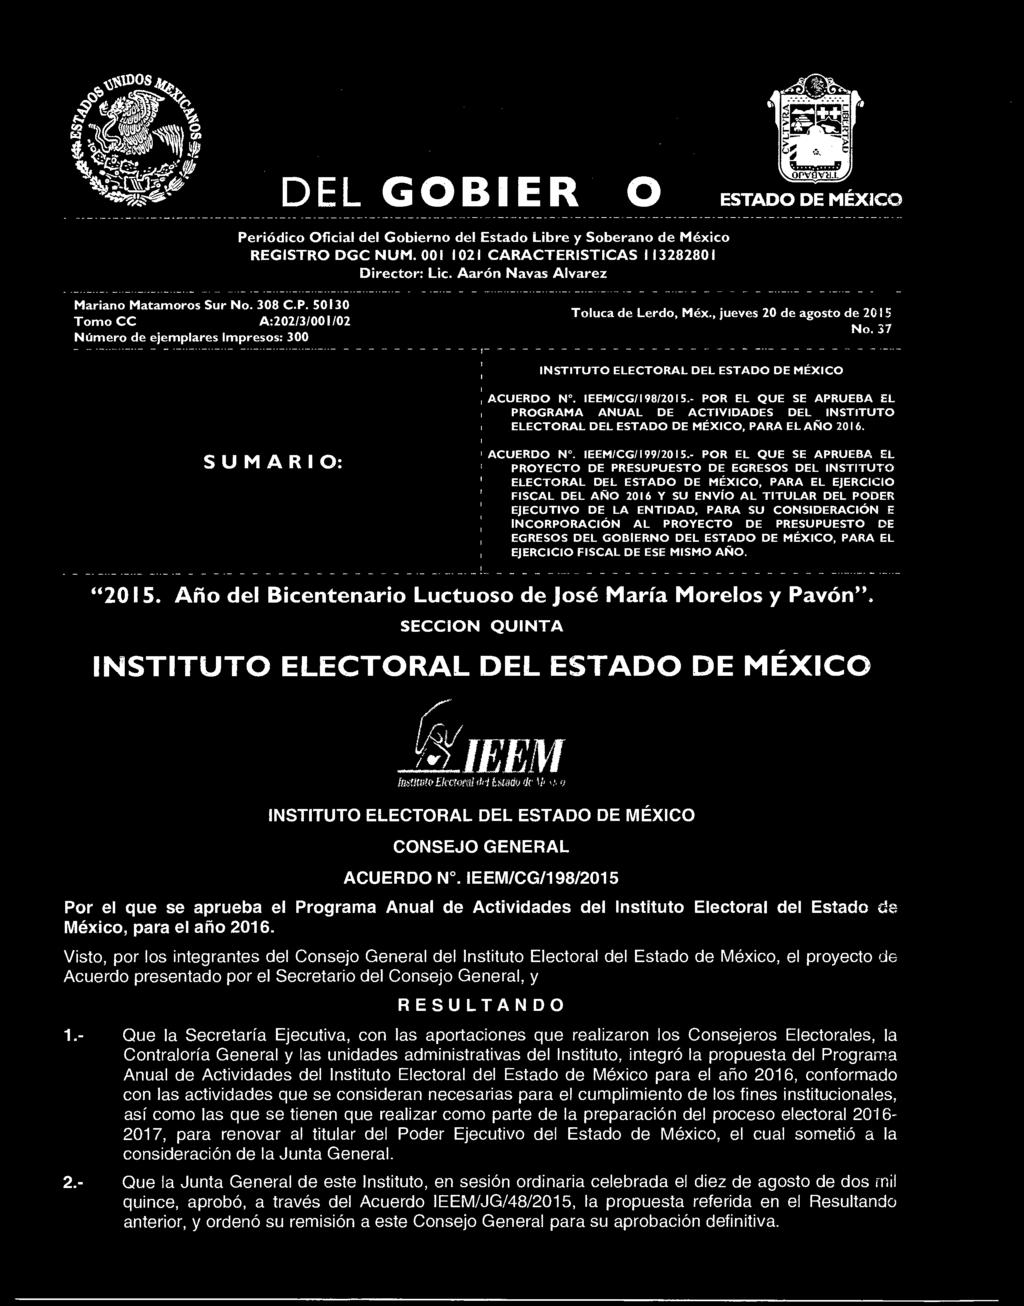 37 INSTITUTO ELECTORAL DEL ESTADO DE MÉXICO ACUERDO N. IEEM/CG/198/2015.- POR EL QUE SE APRUEBA EL PROGRAMA ANUAL DE ACTIVIDADES DEL INSTITUTO ELECTORAL DEL ESTADO DE MÉXICO, PARA EL AÑO 2016.